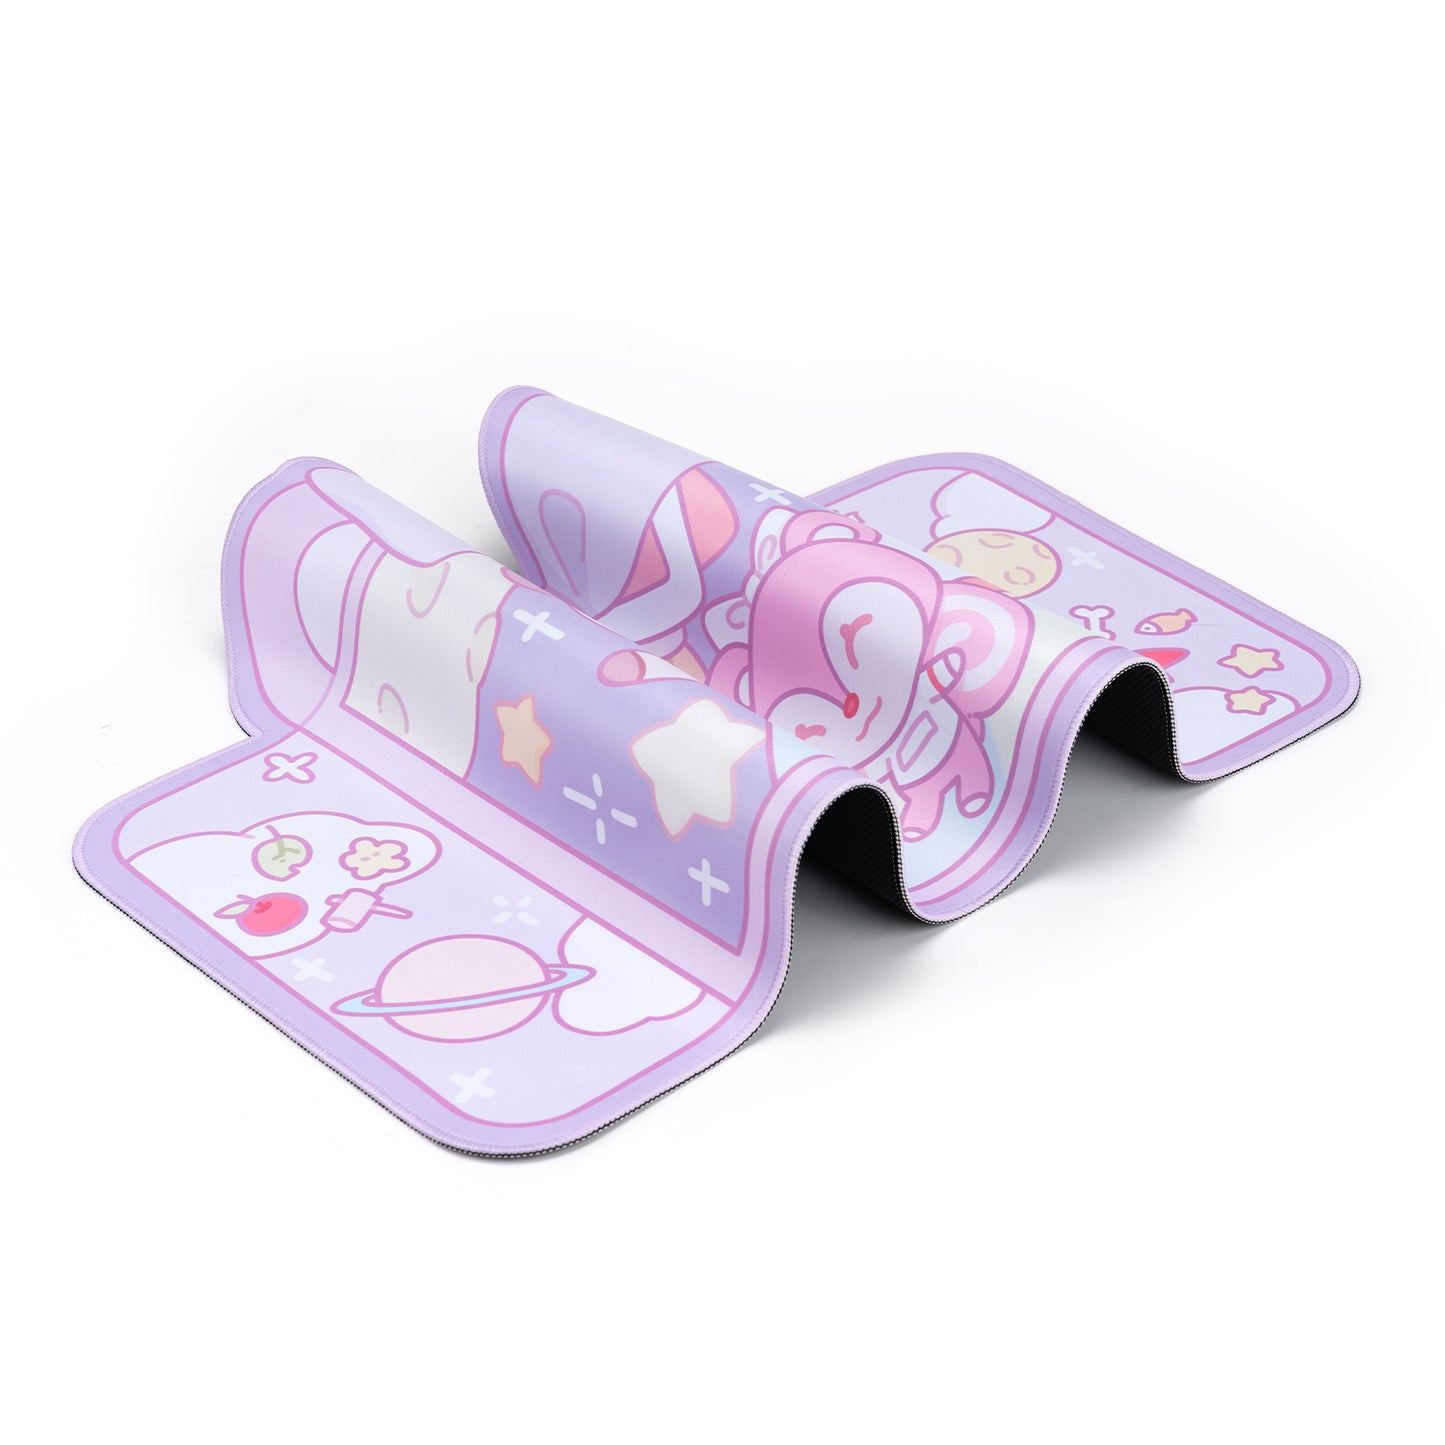 BlingKiyo Space Animal Crossing Large Mouse Pad / Desk Mat